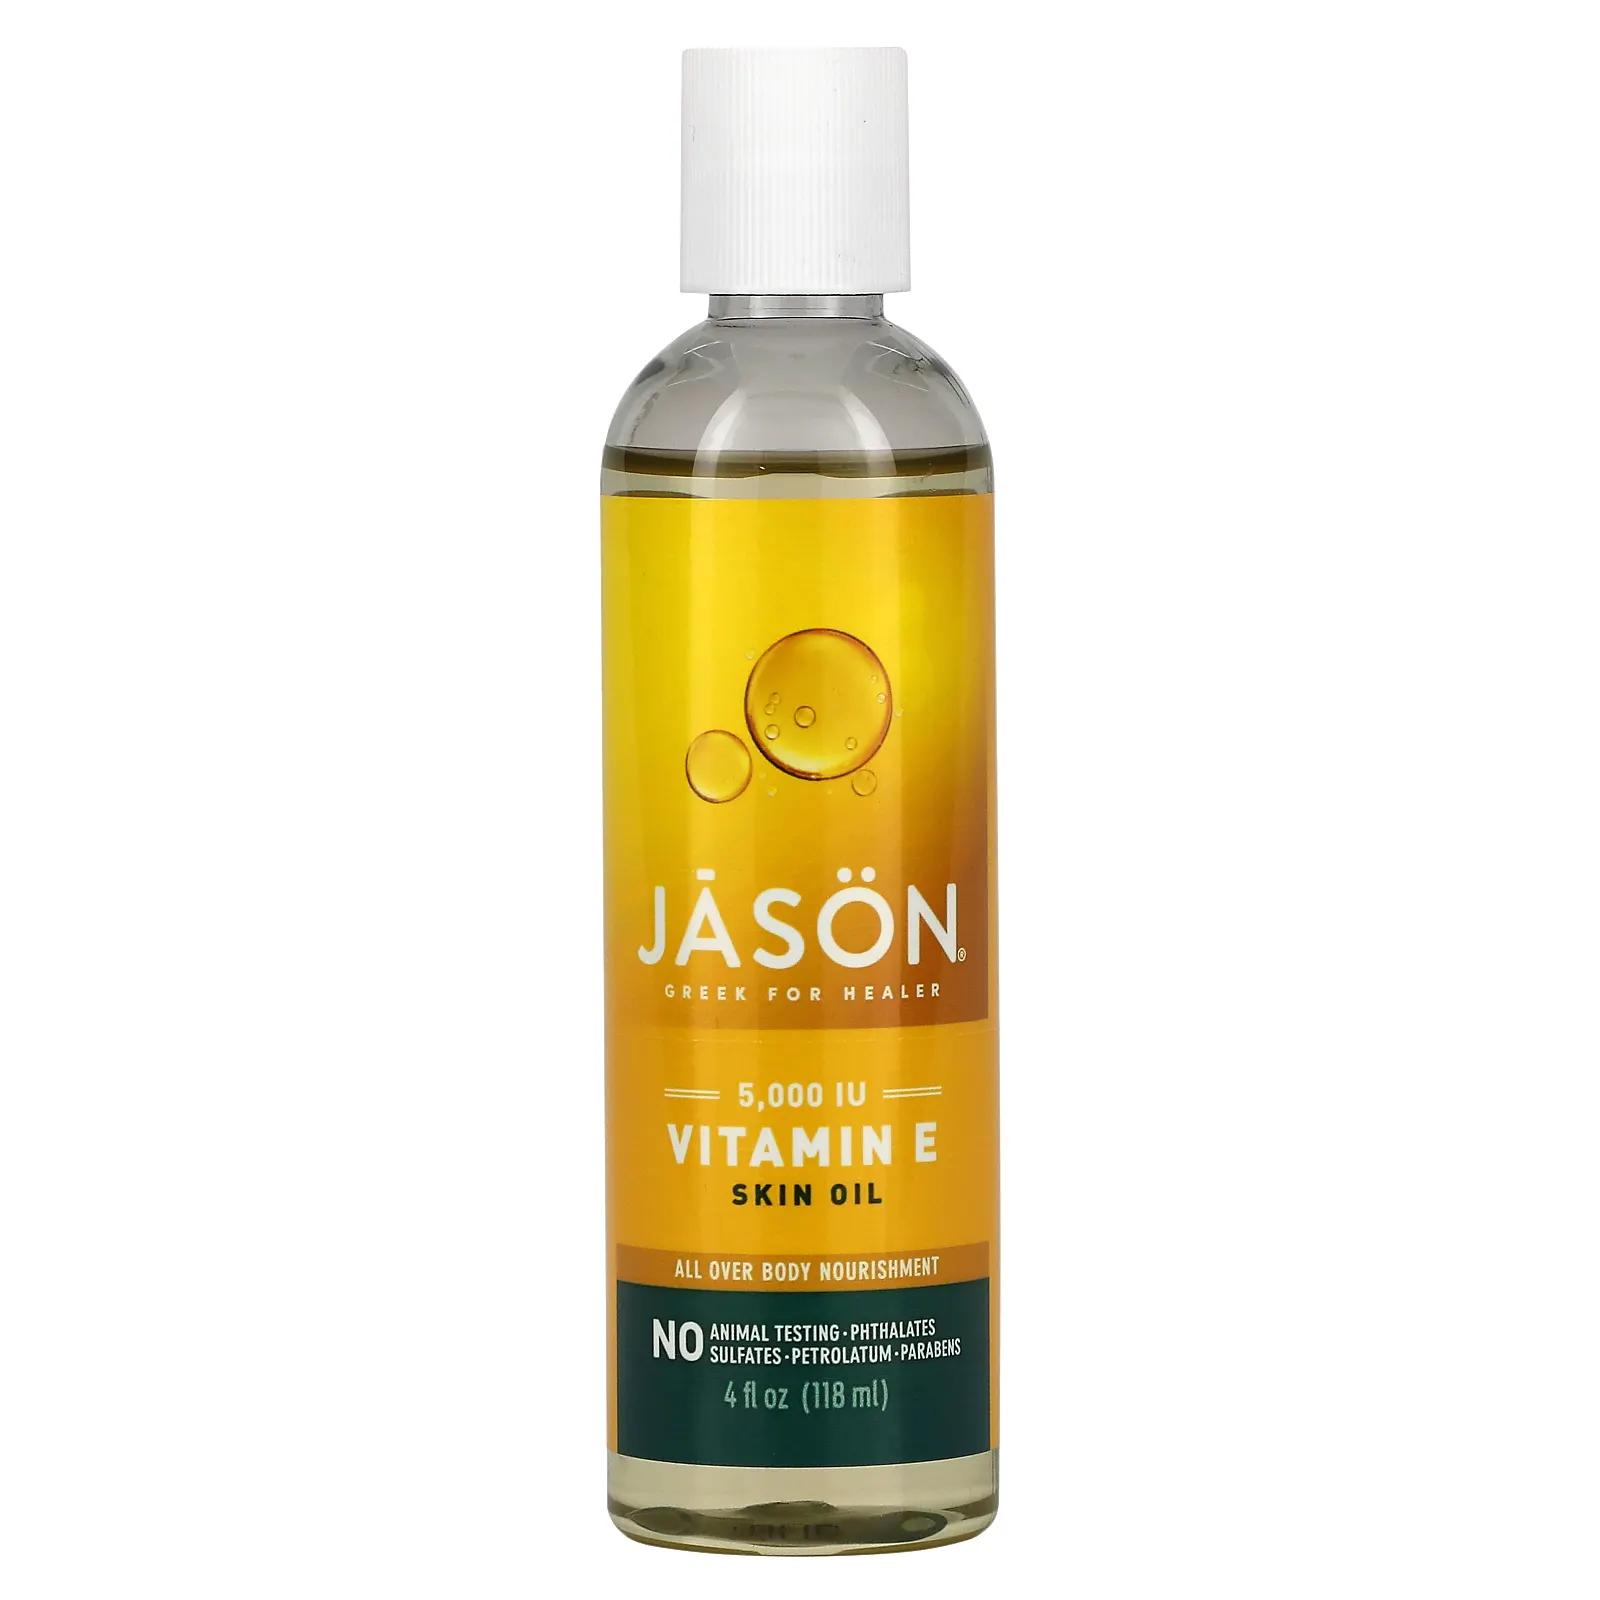 Jason Natural Масло для кожи с витамином Е 5000 М Е 4 ж. унц. (118 мл) цена и фото